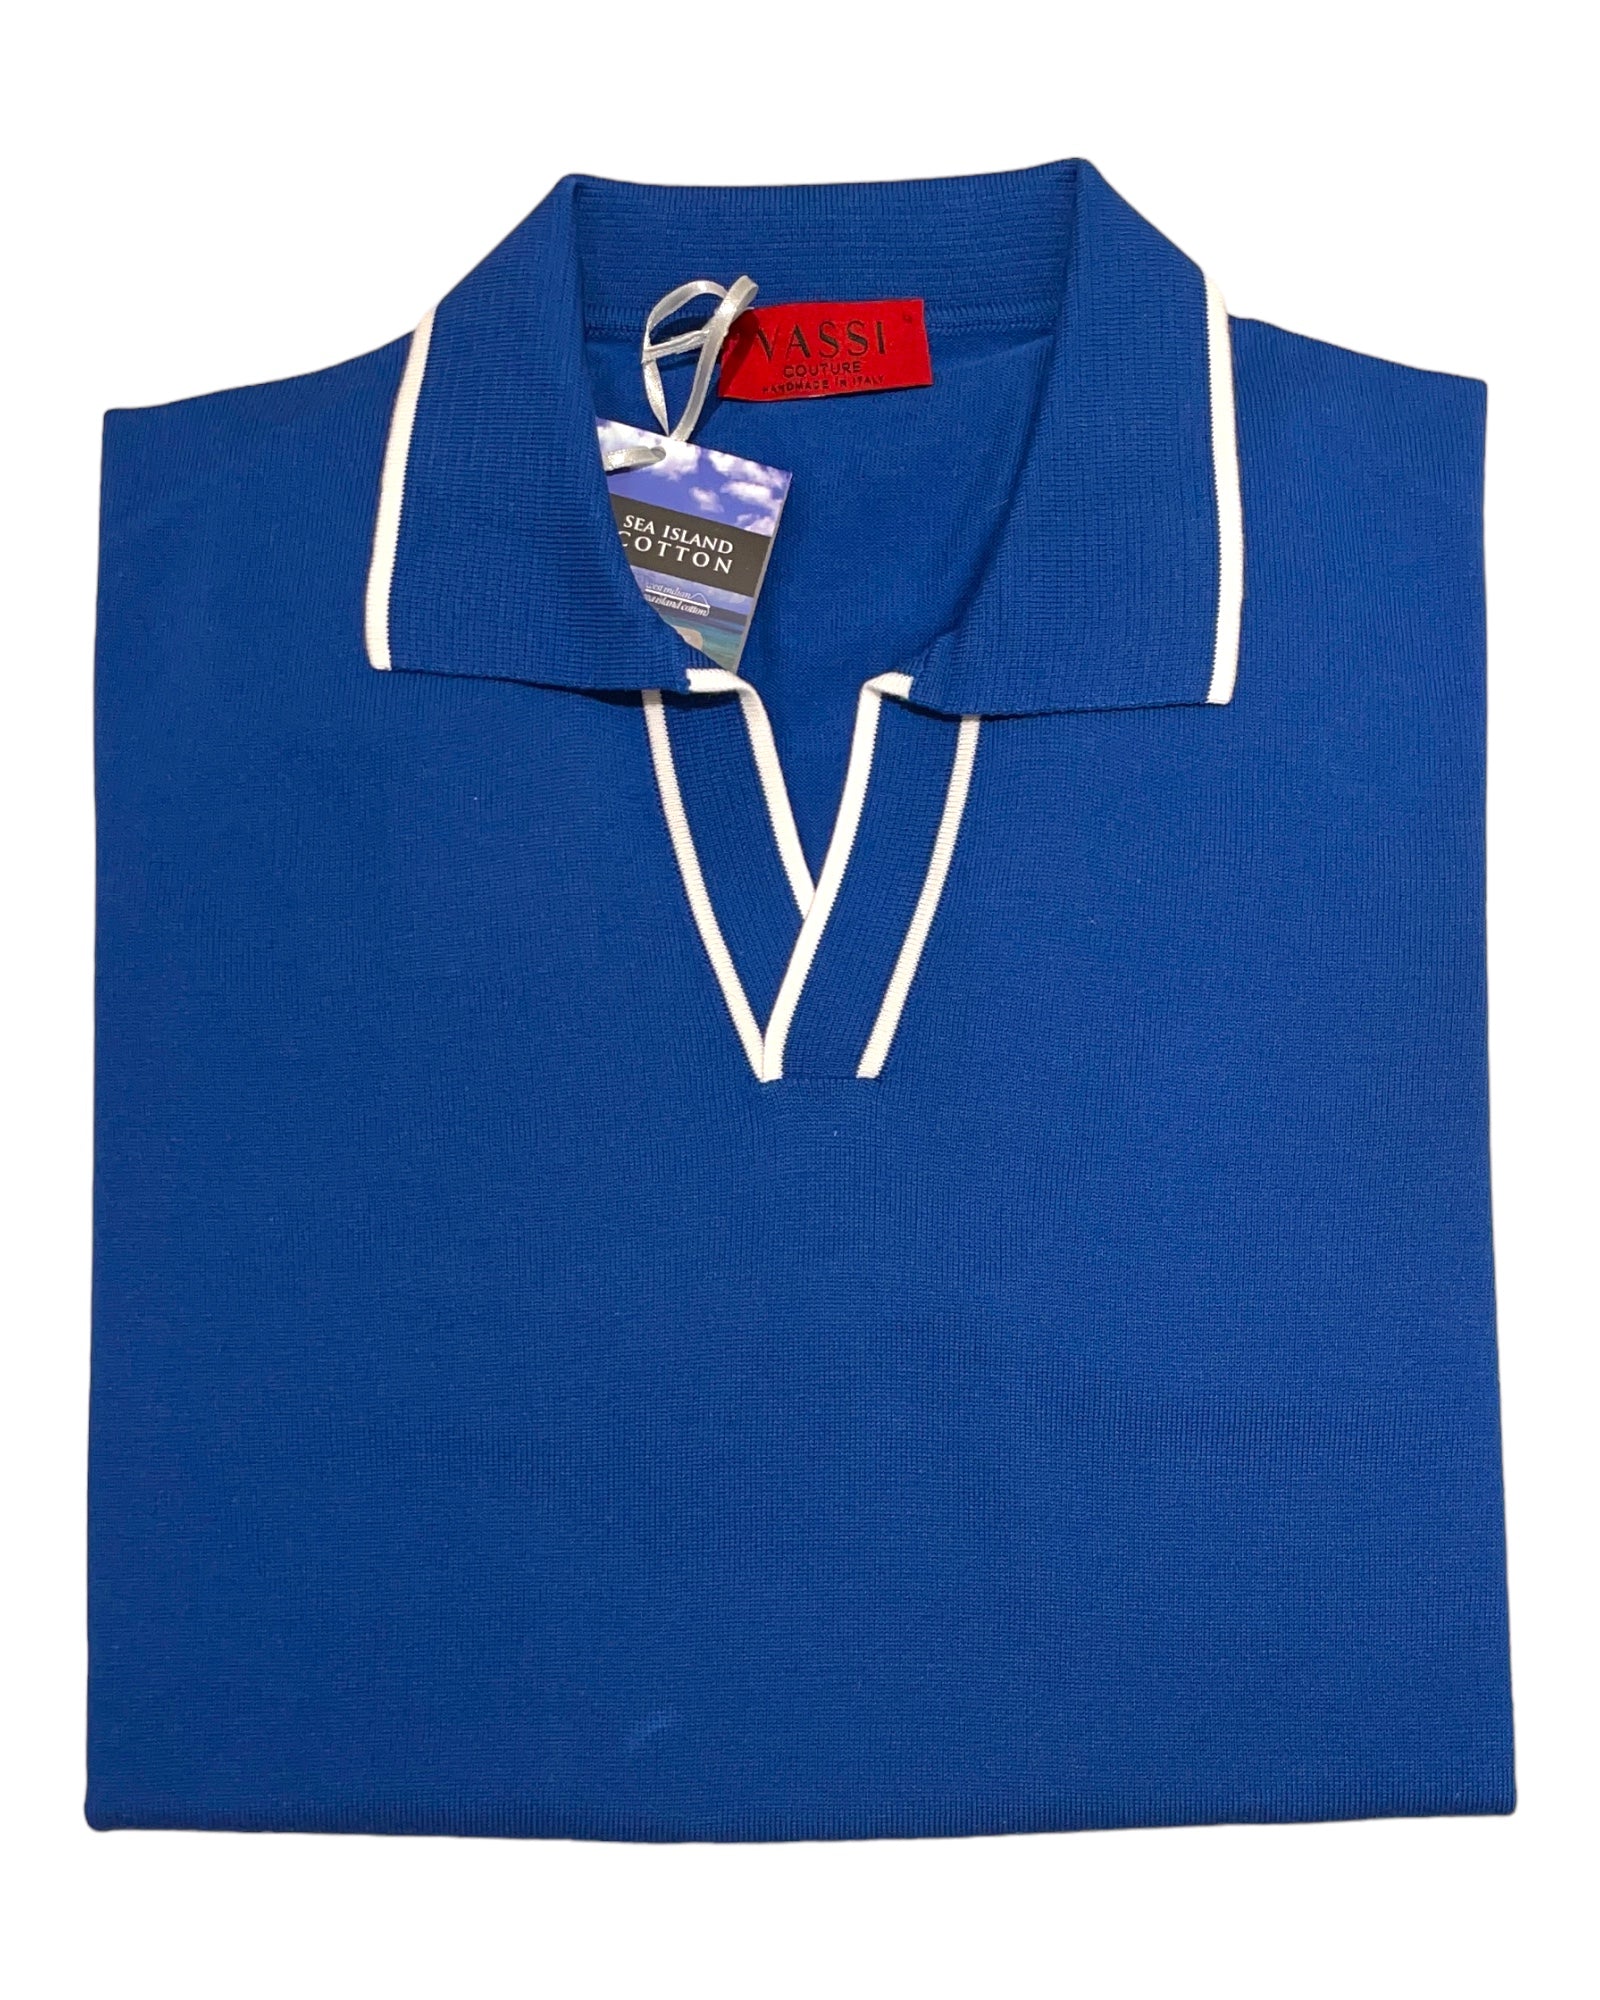 Johnny Collar Polo Shirt - Indigo Blue, White Trim SWEATERSM